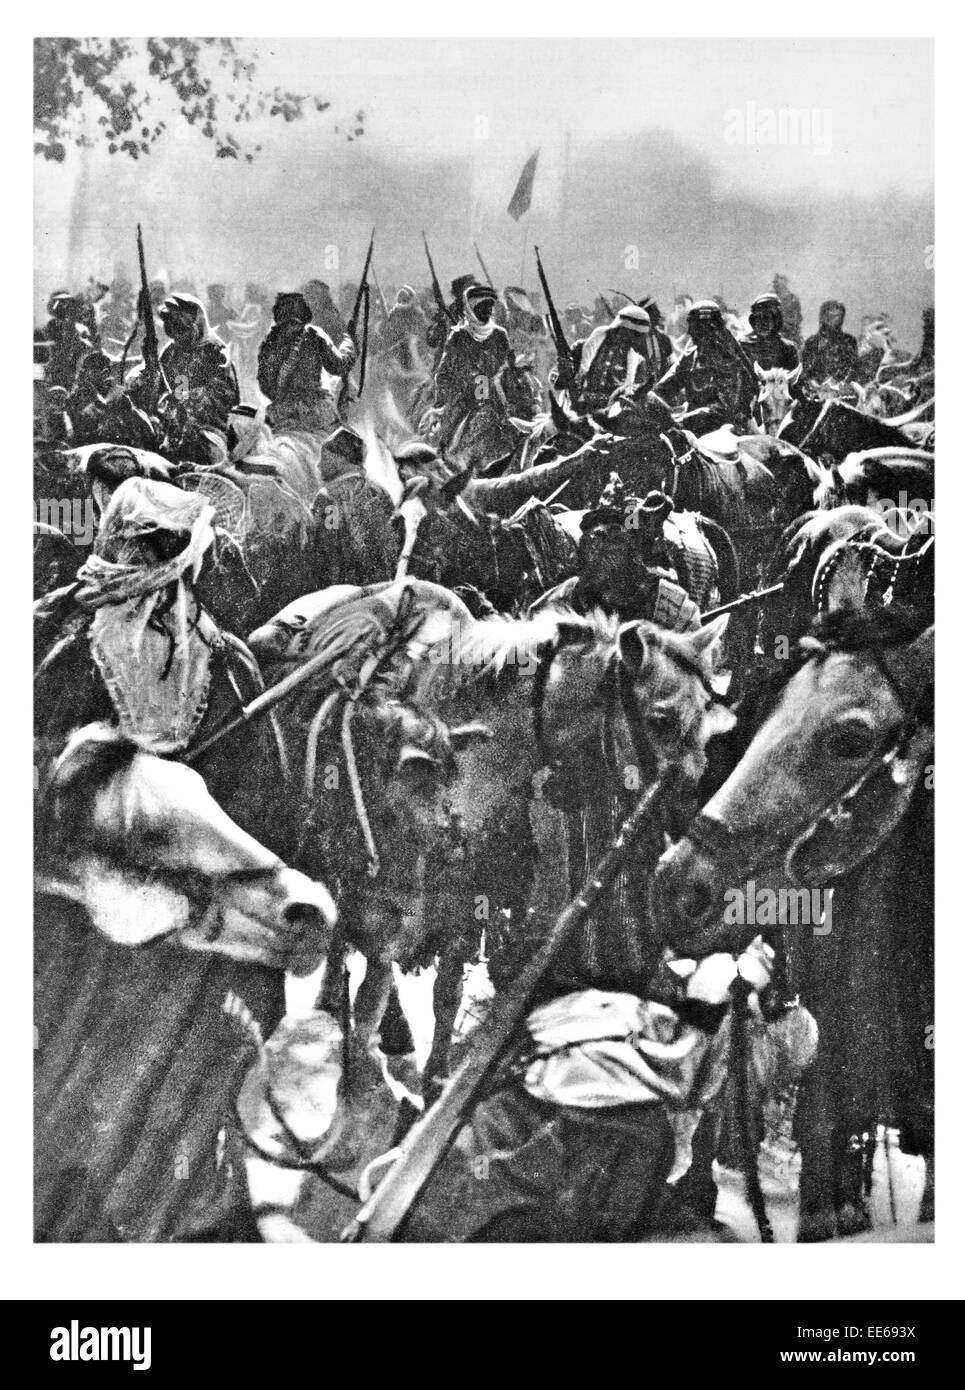 Entrer dans Damas Lawrence d'Arabie la Révolte Arabe Syrie arabe portrait ottoman turc cavalerie cheval soldat fusil Banque D'Images